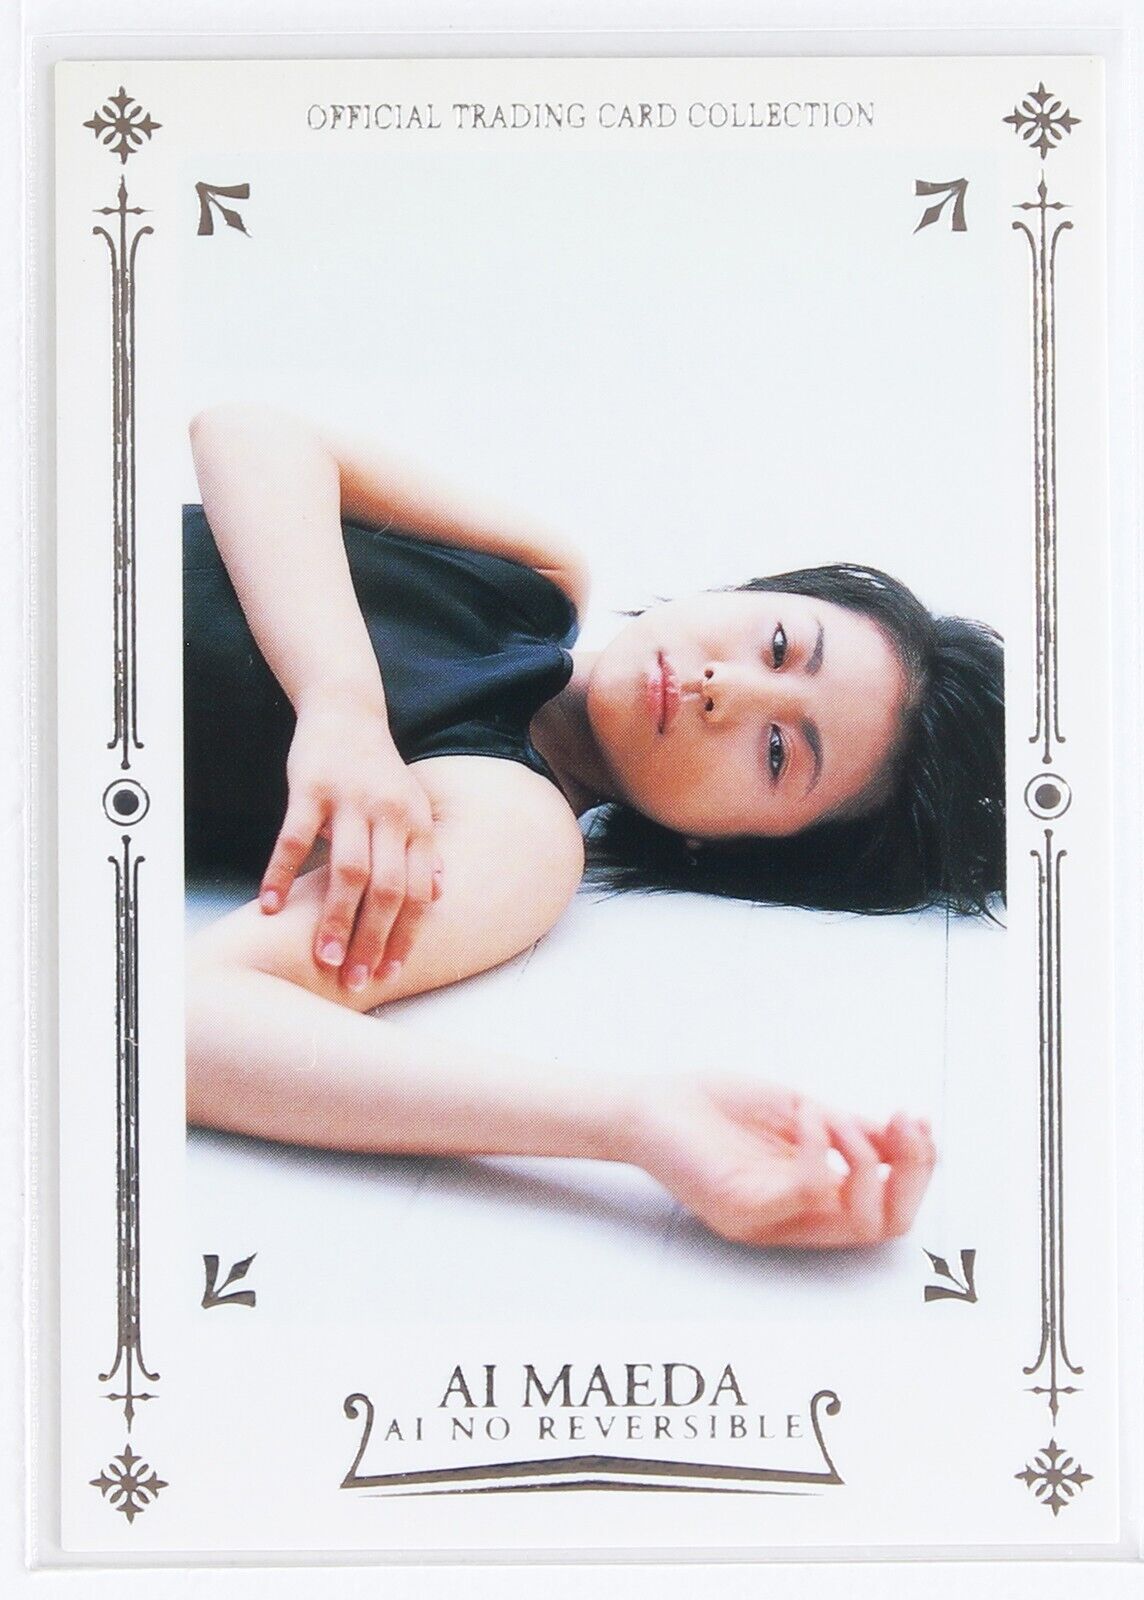 AI MAEDA NO.02 -ai no reversible- Japanese Actress Trading foil stamping Card